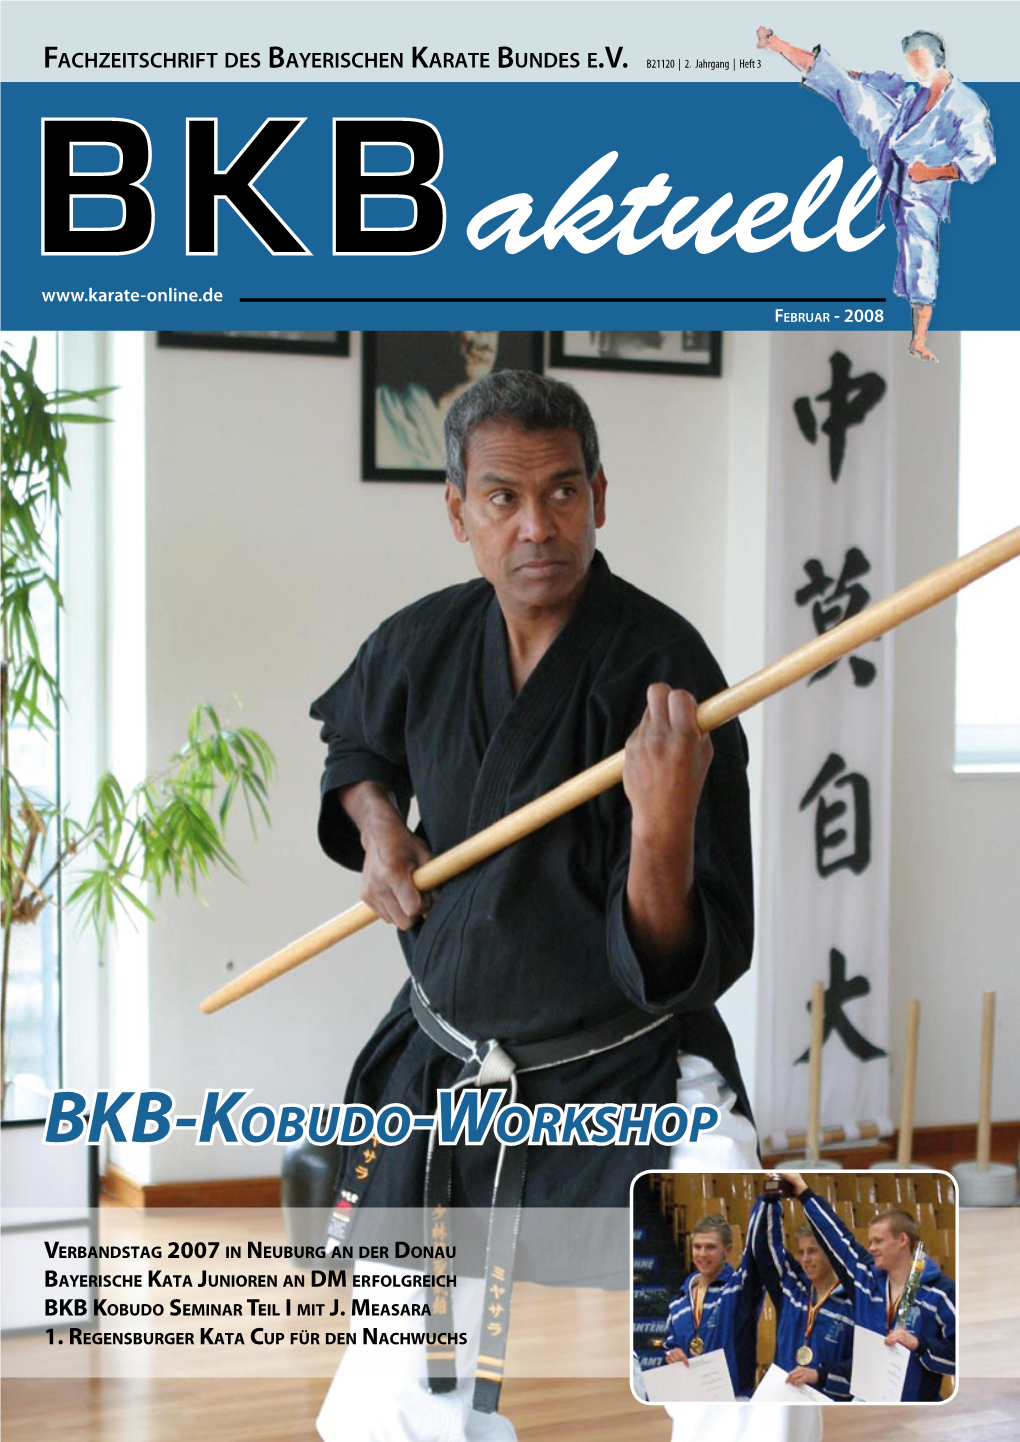 BKB-Kobudo-Workshop